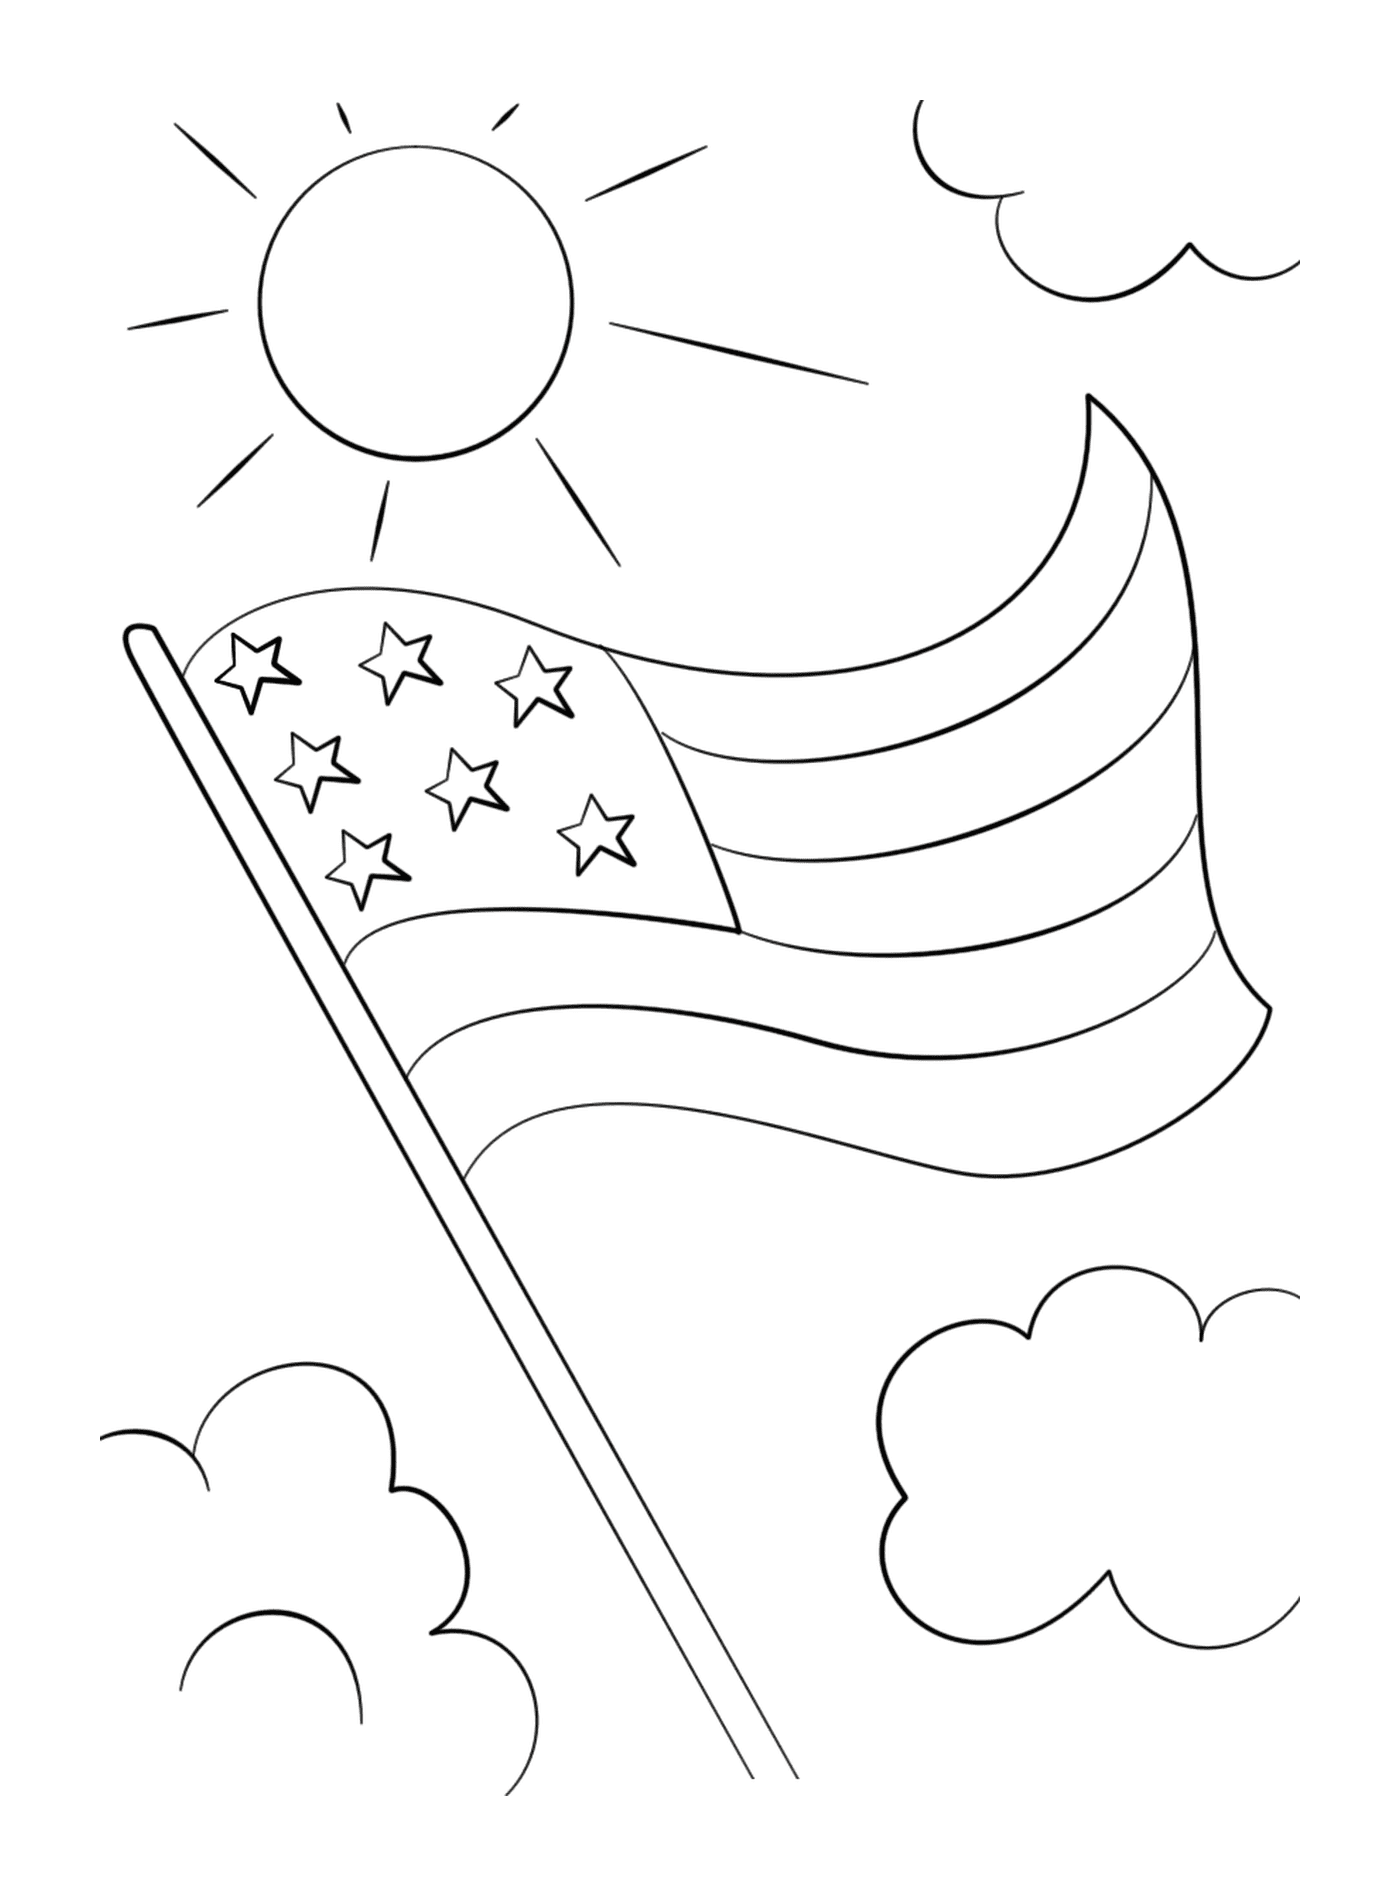   Drapeau américain avec des étoiles flottant dans le ciel 